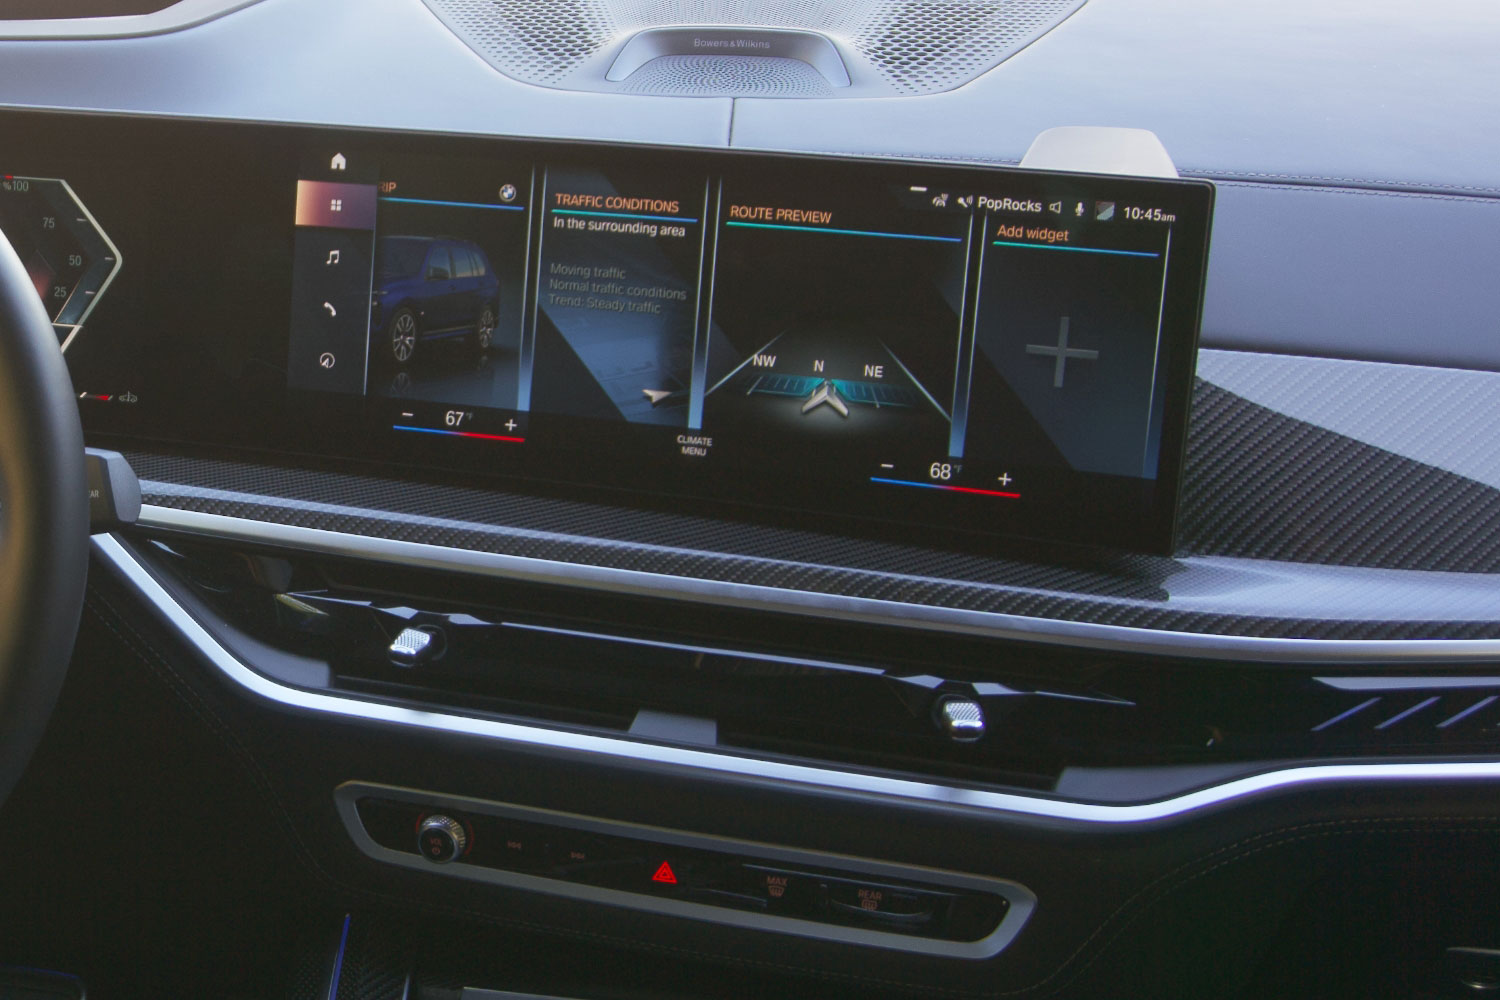 2023 BMW X7 infotainment system